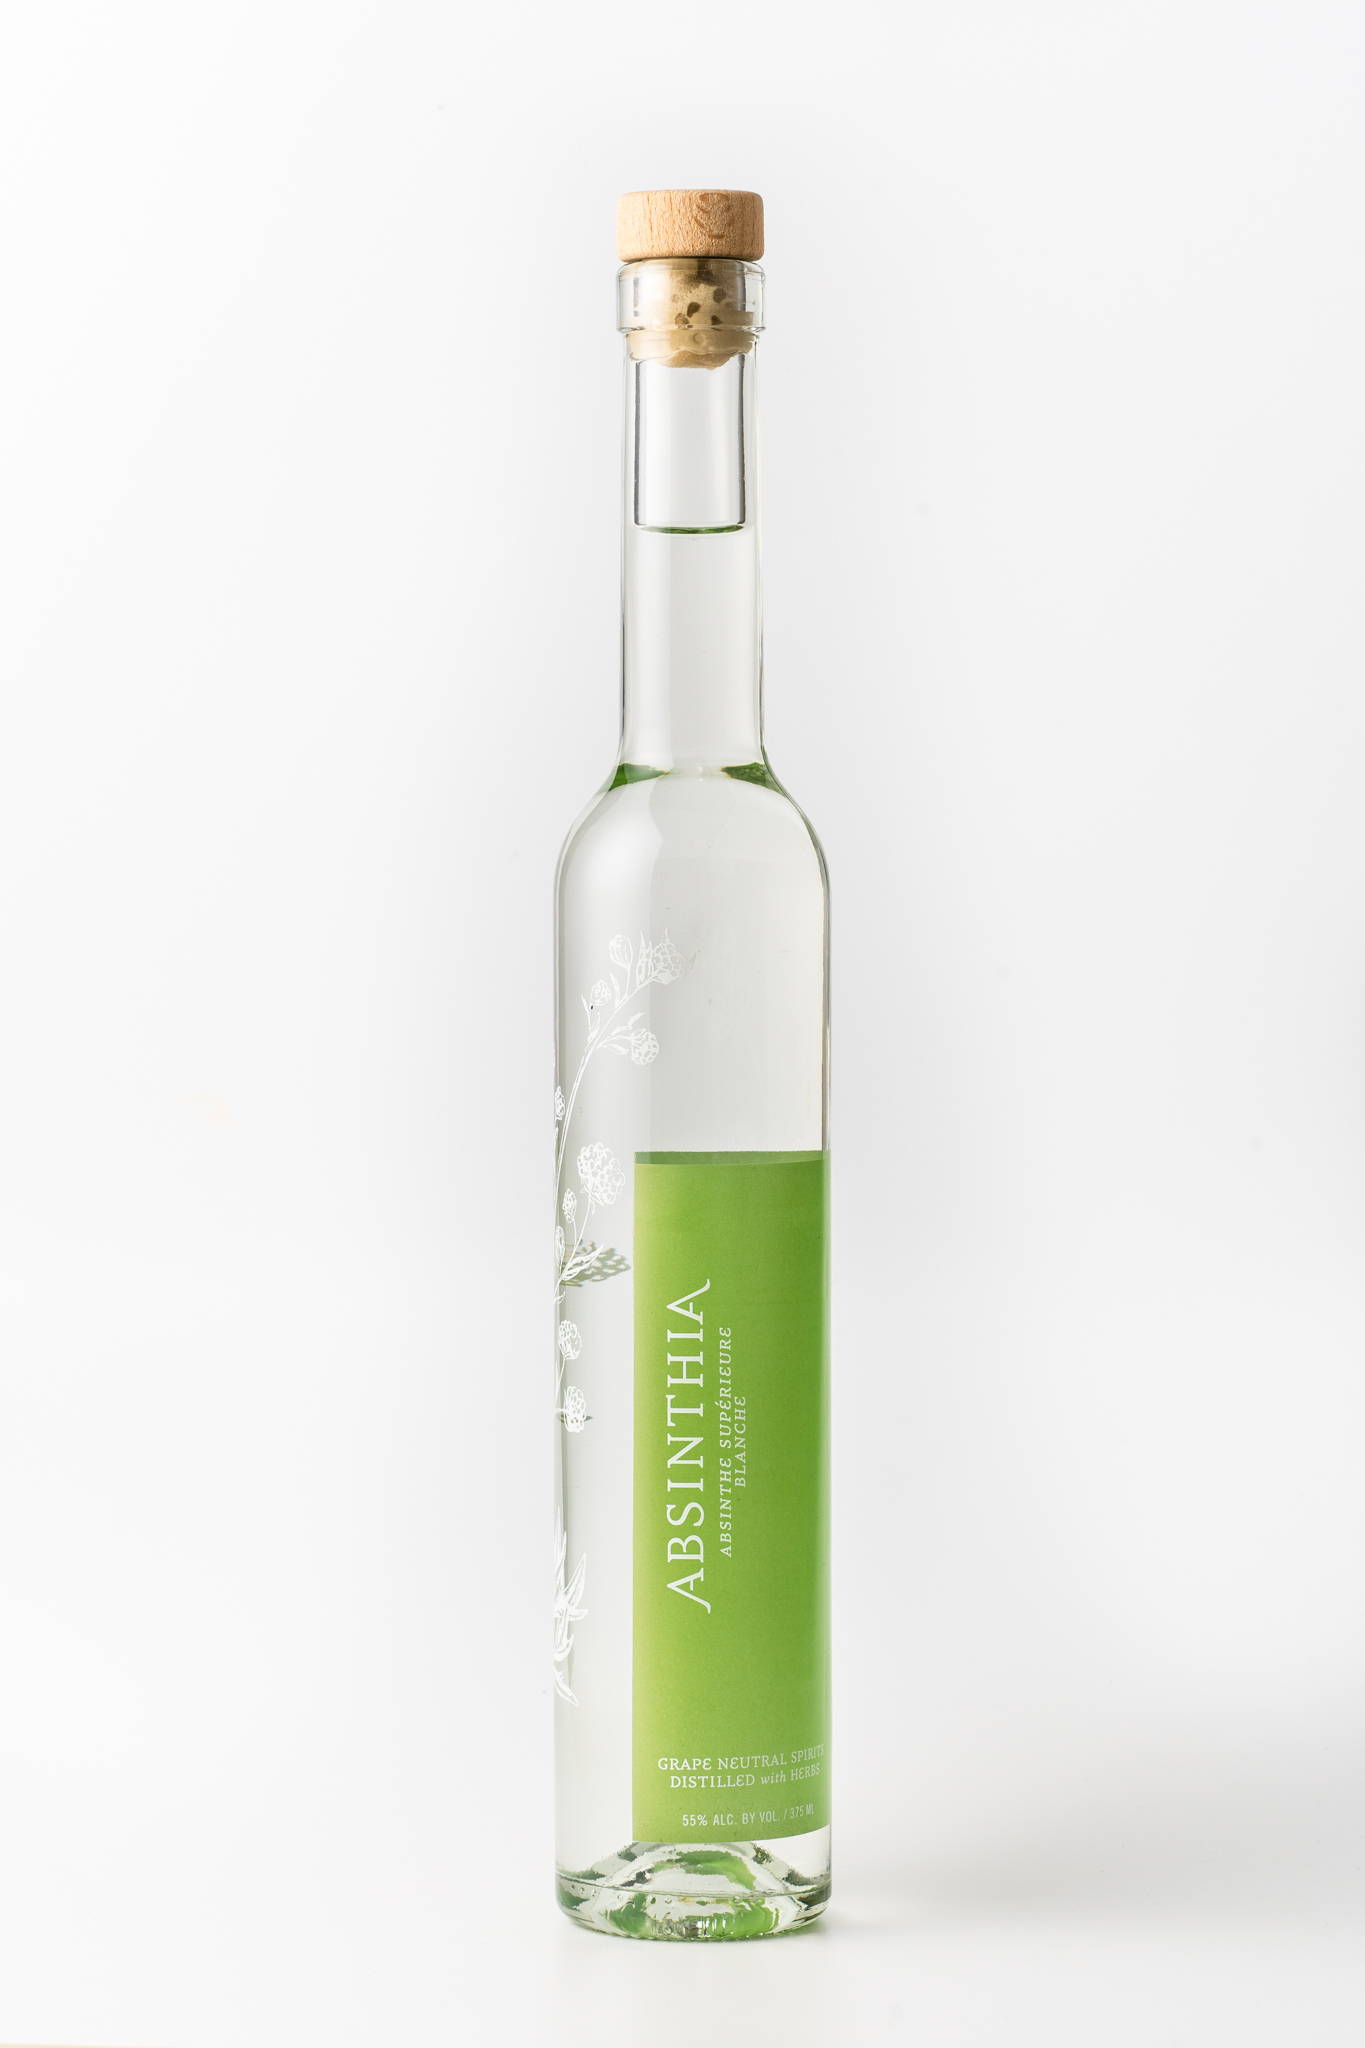 Bottle of Absinthia's Absinthe Blanche